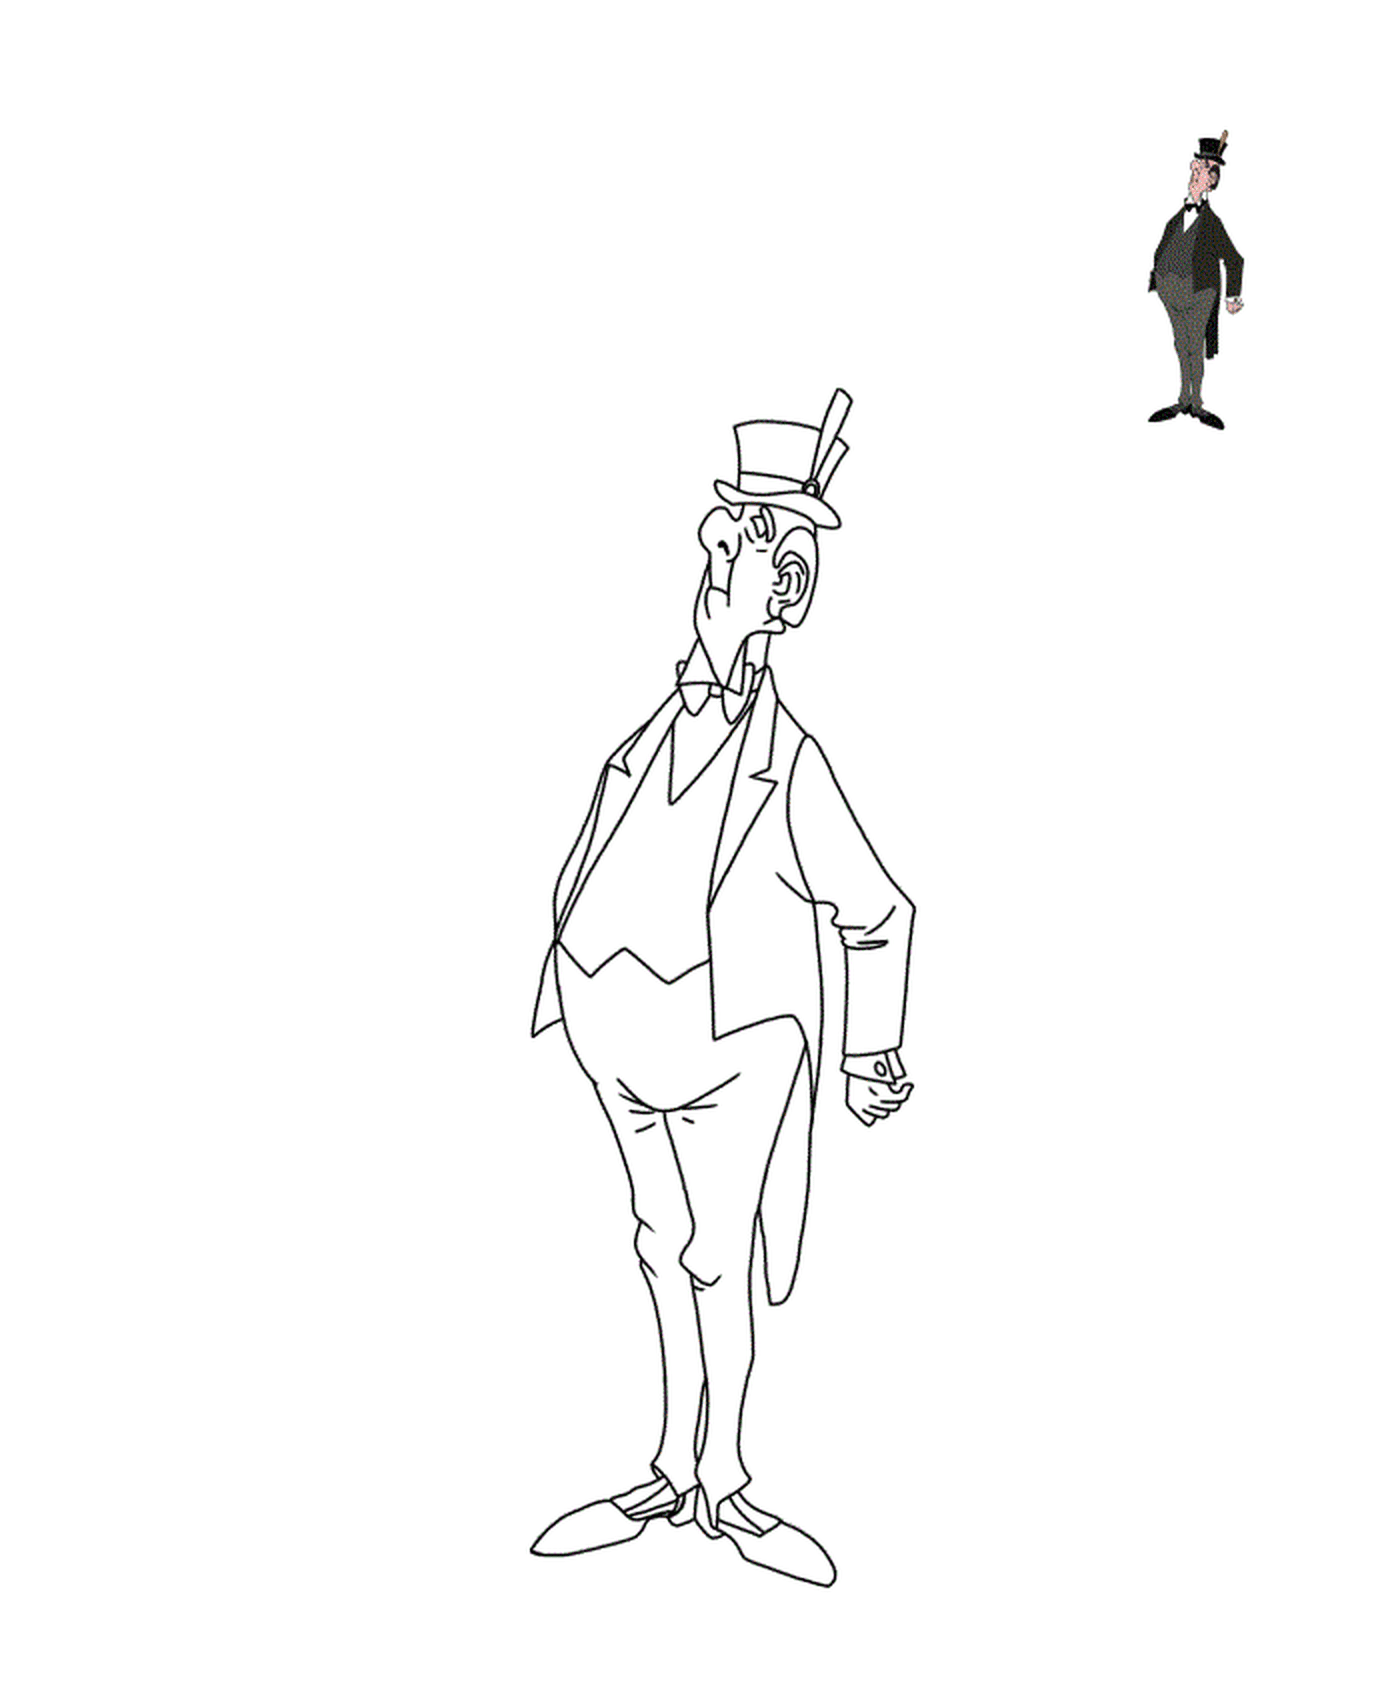  Человек с верхней шляпой и костюмом 